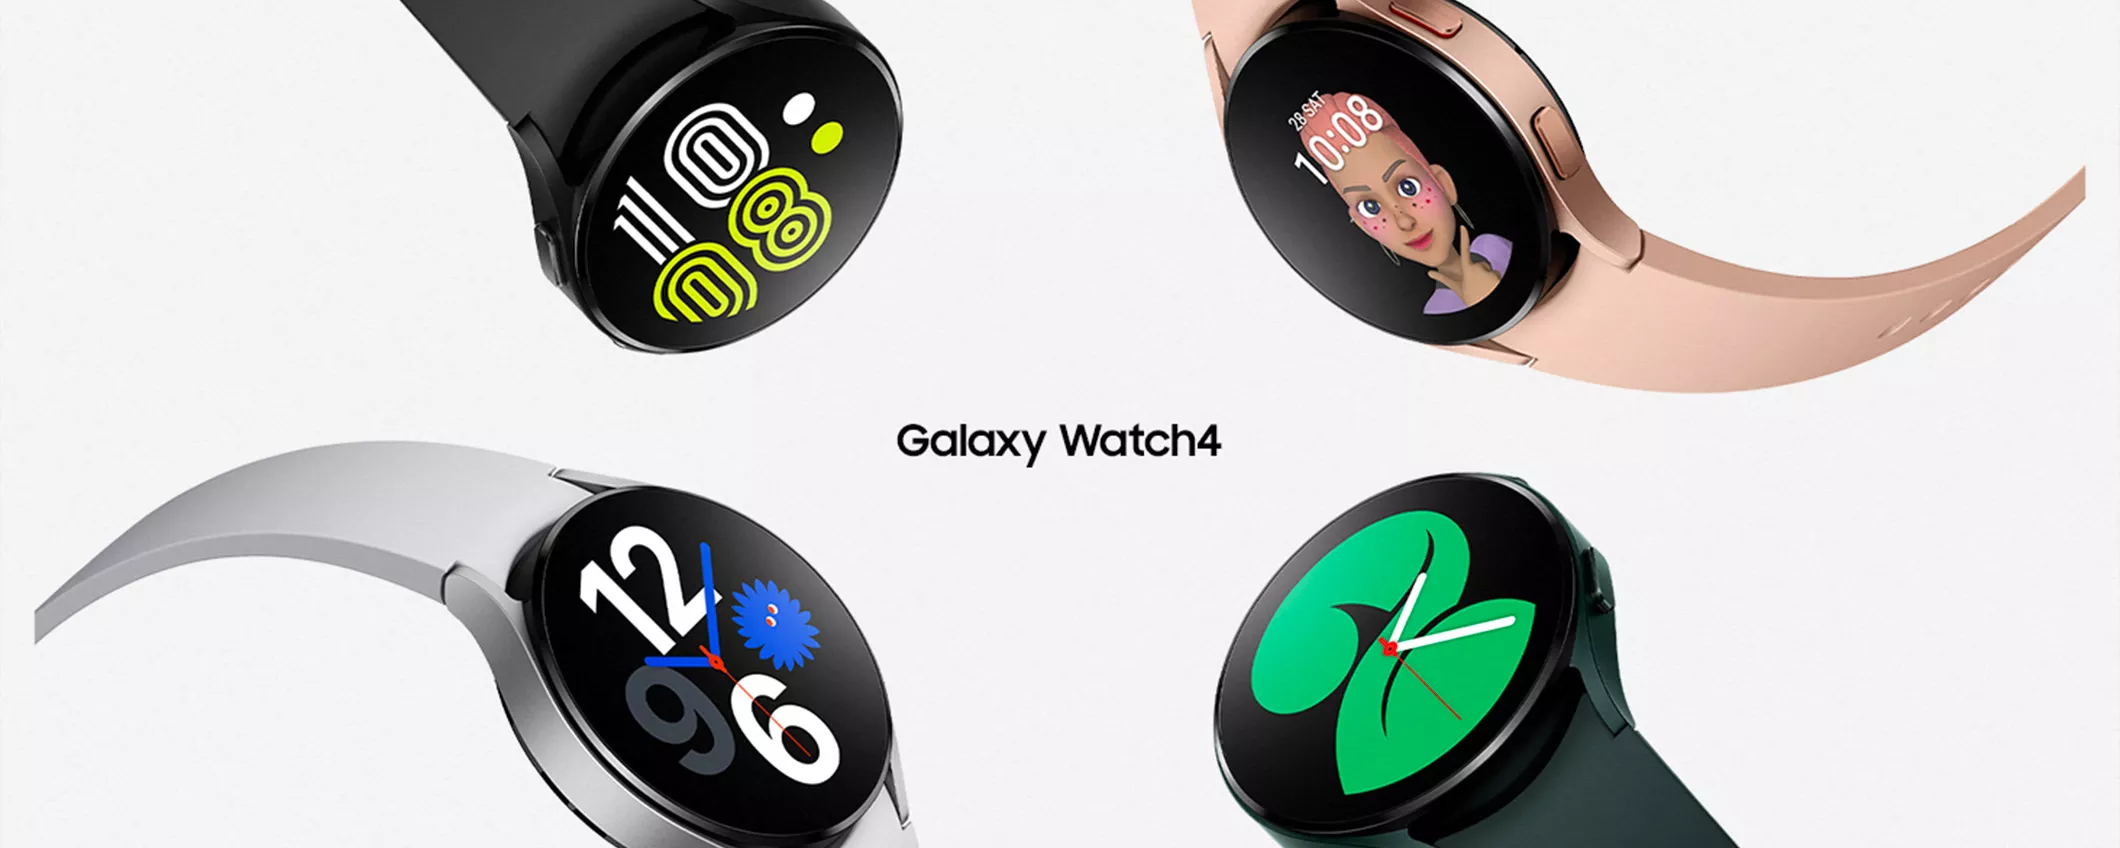 Samsung Galaxy Watch4 da 40mm a METÀ PREZZO: non perdere questa opportunità!